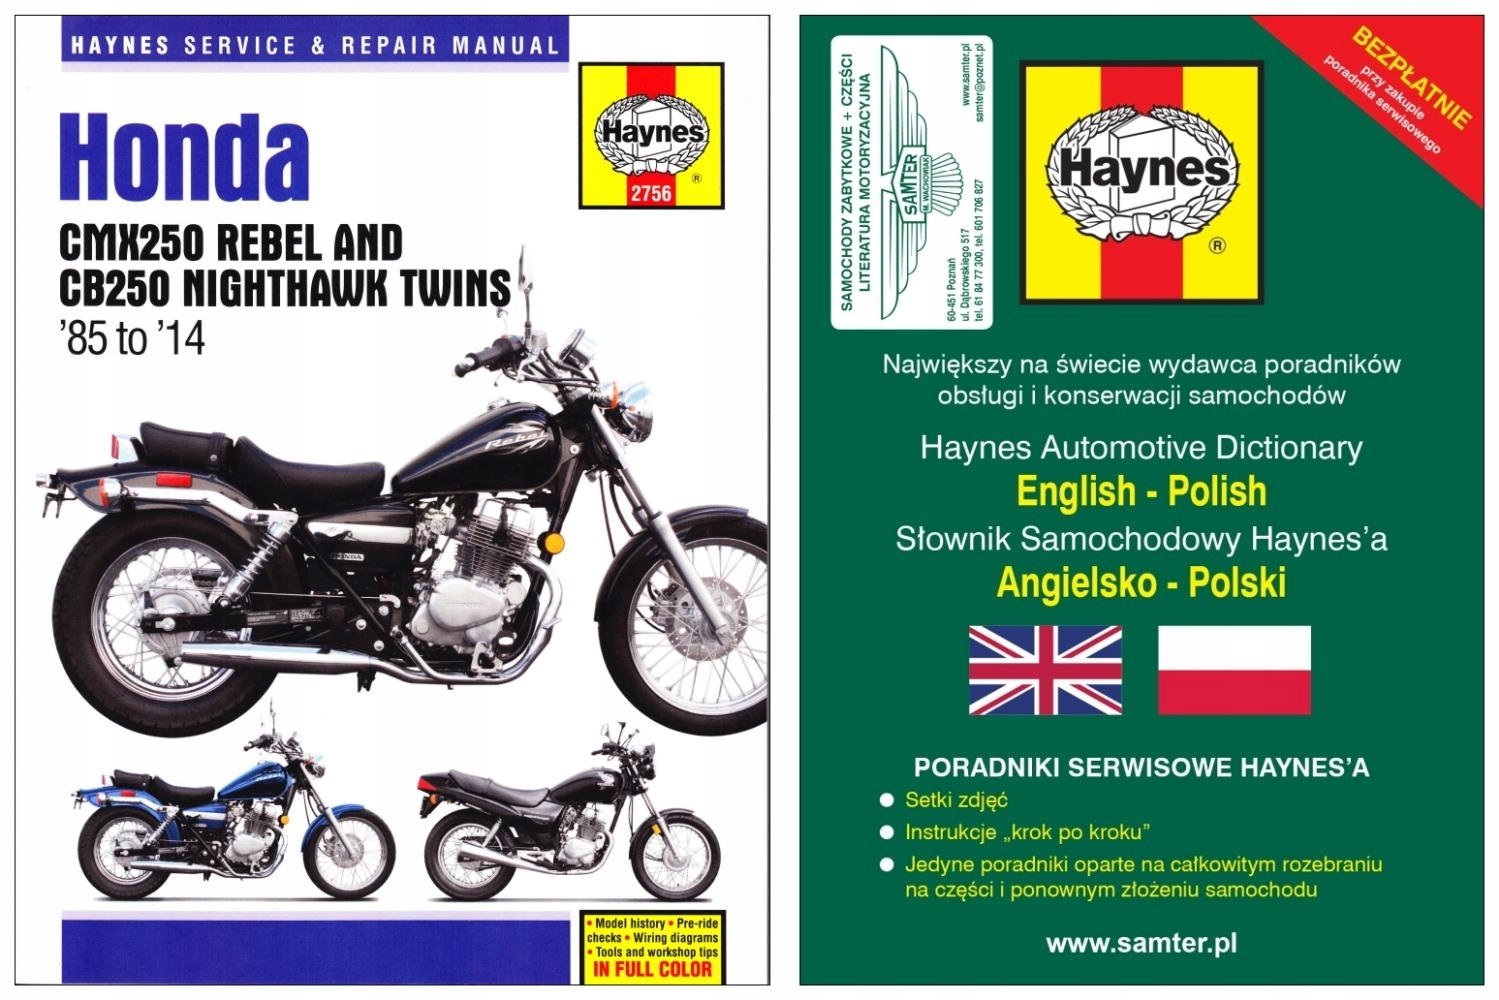 Скачать руководство по эксплуатации honda 2013 cb500f, инструкция по применению на мотоциклы pdf бесплатно